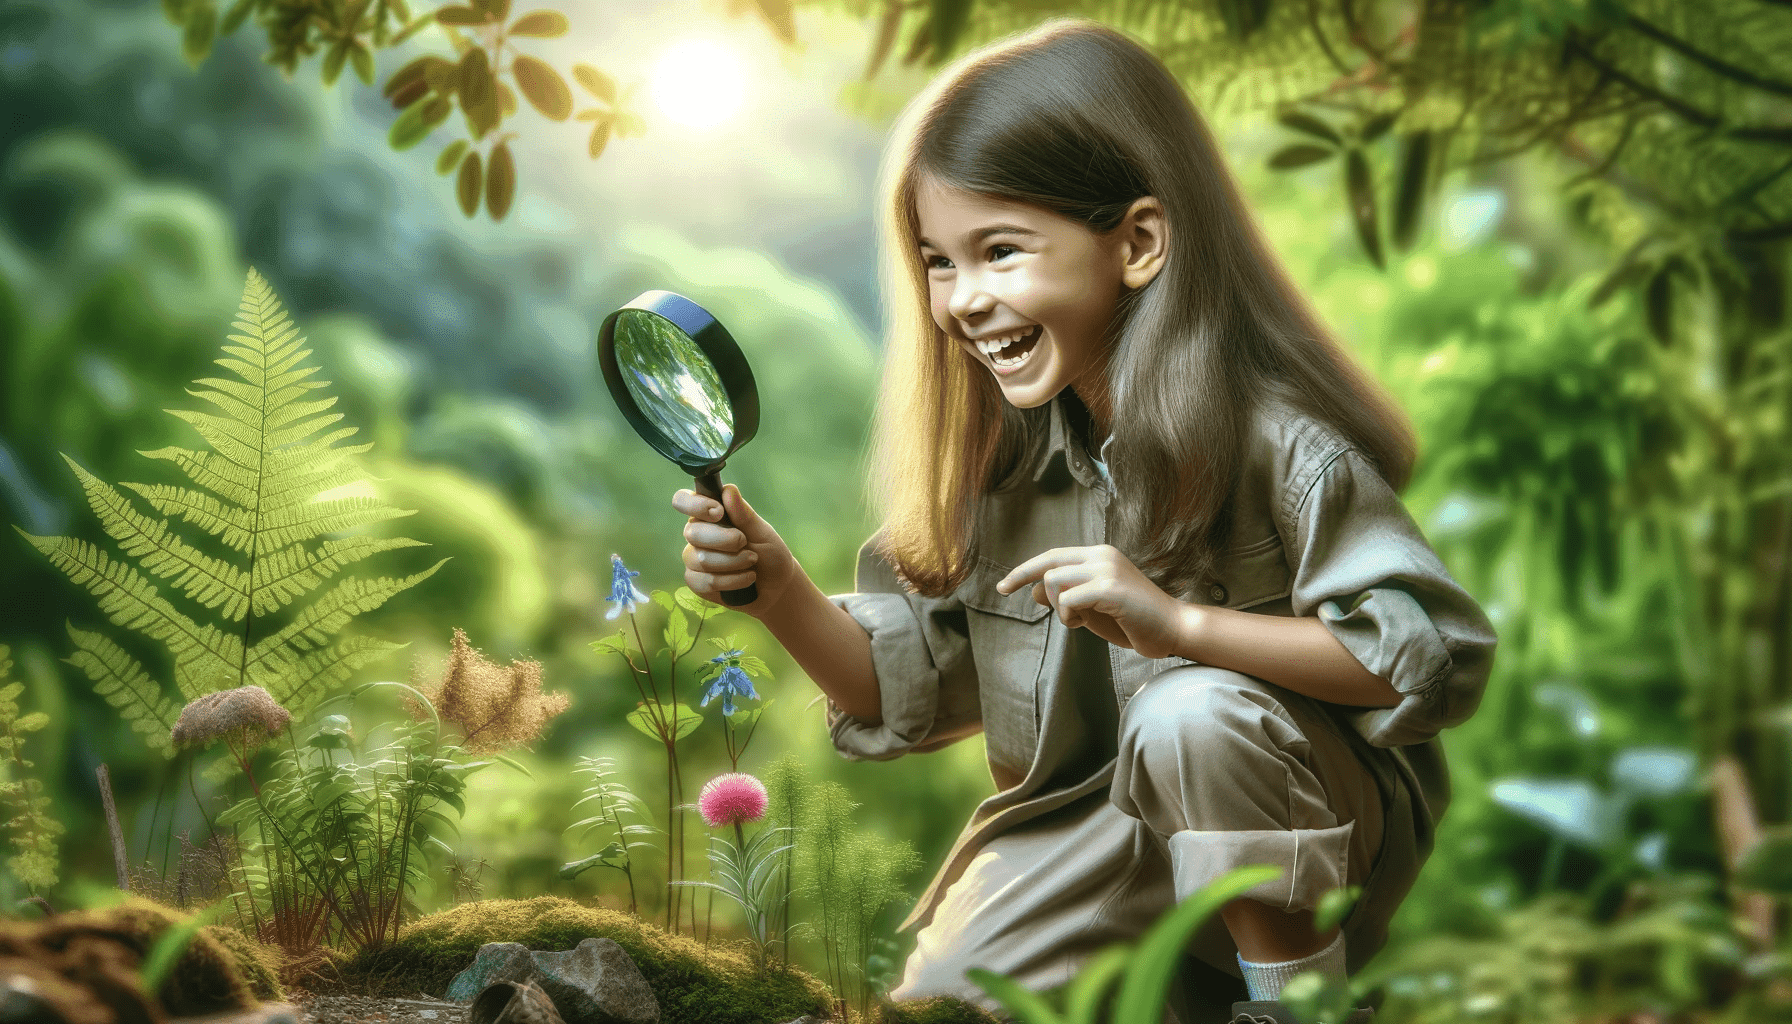 Una niña curiosa en un bosque mirando hacia el suelo con una lupa en busca de un nuevo descubrimiento.